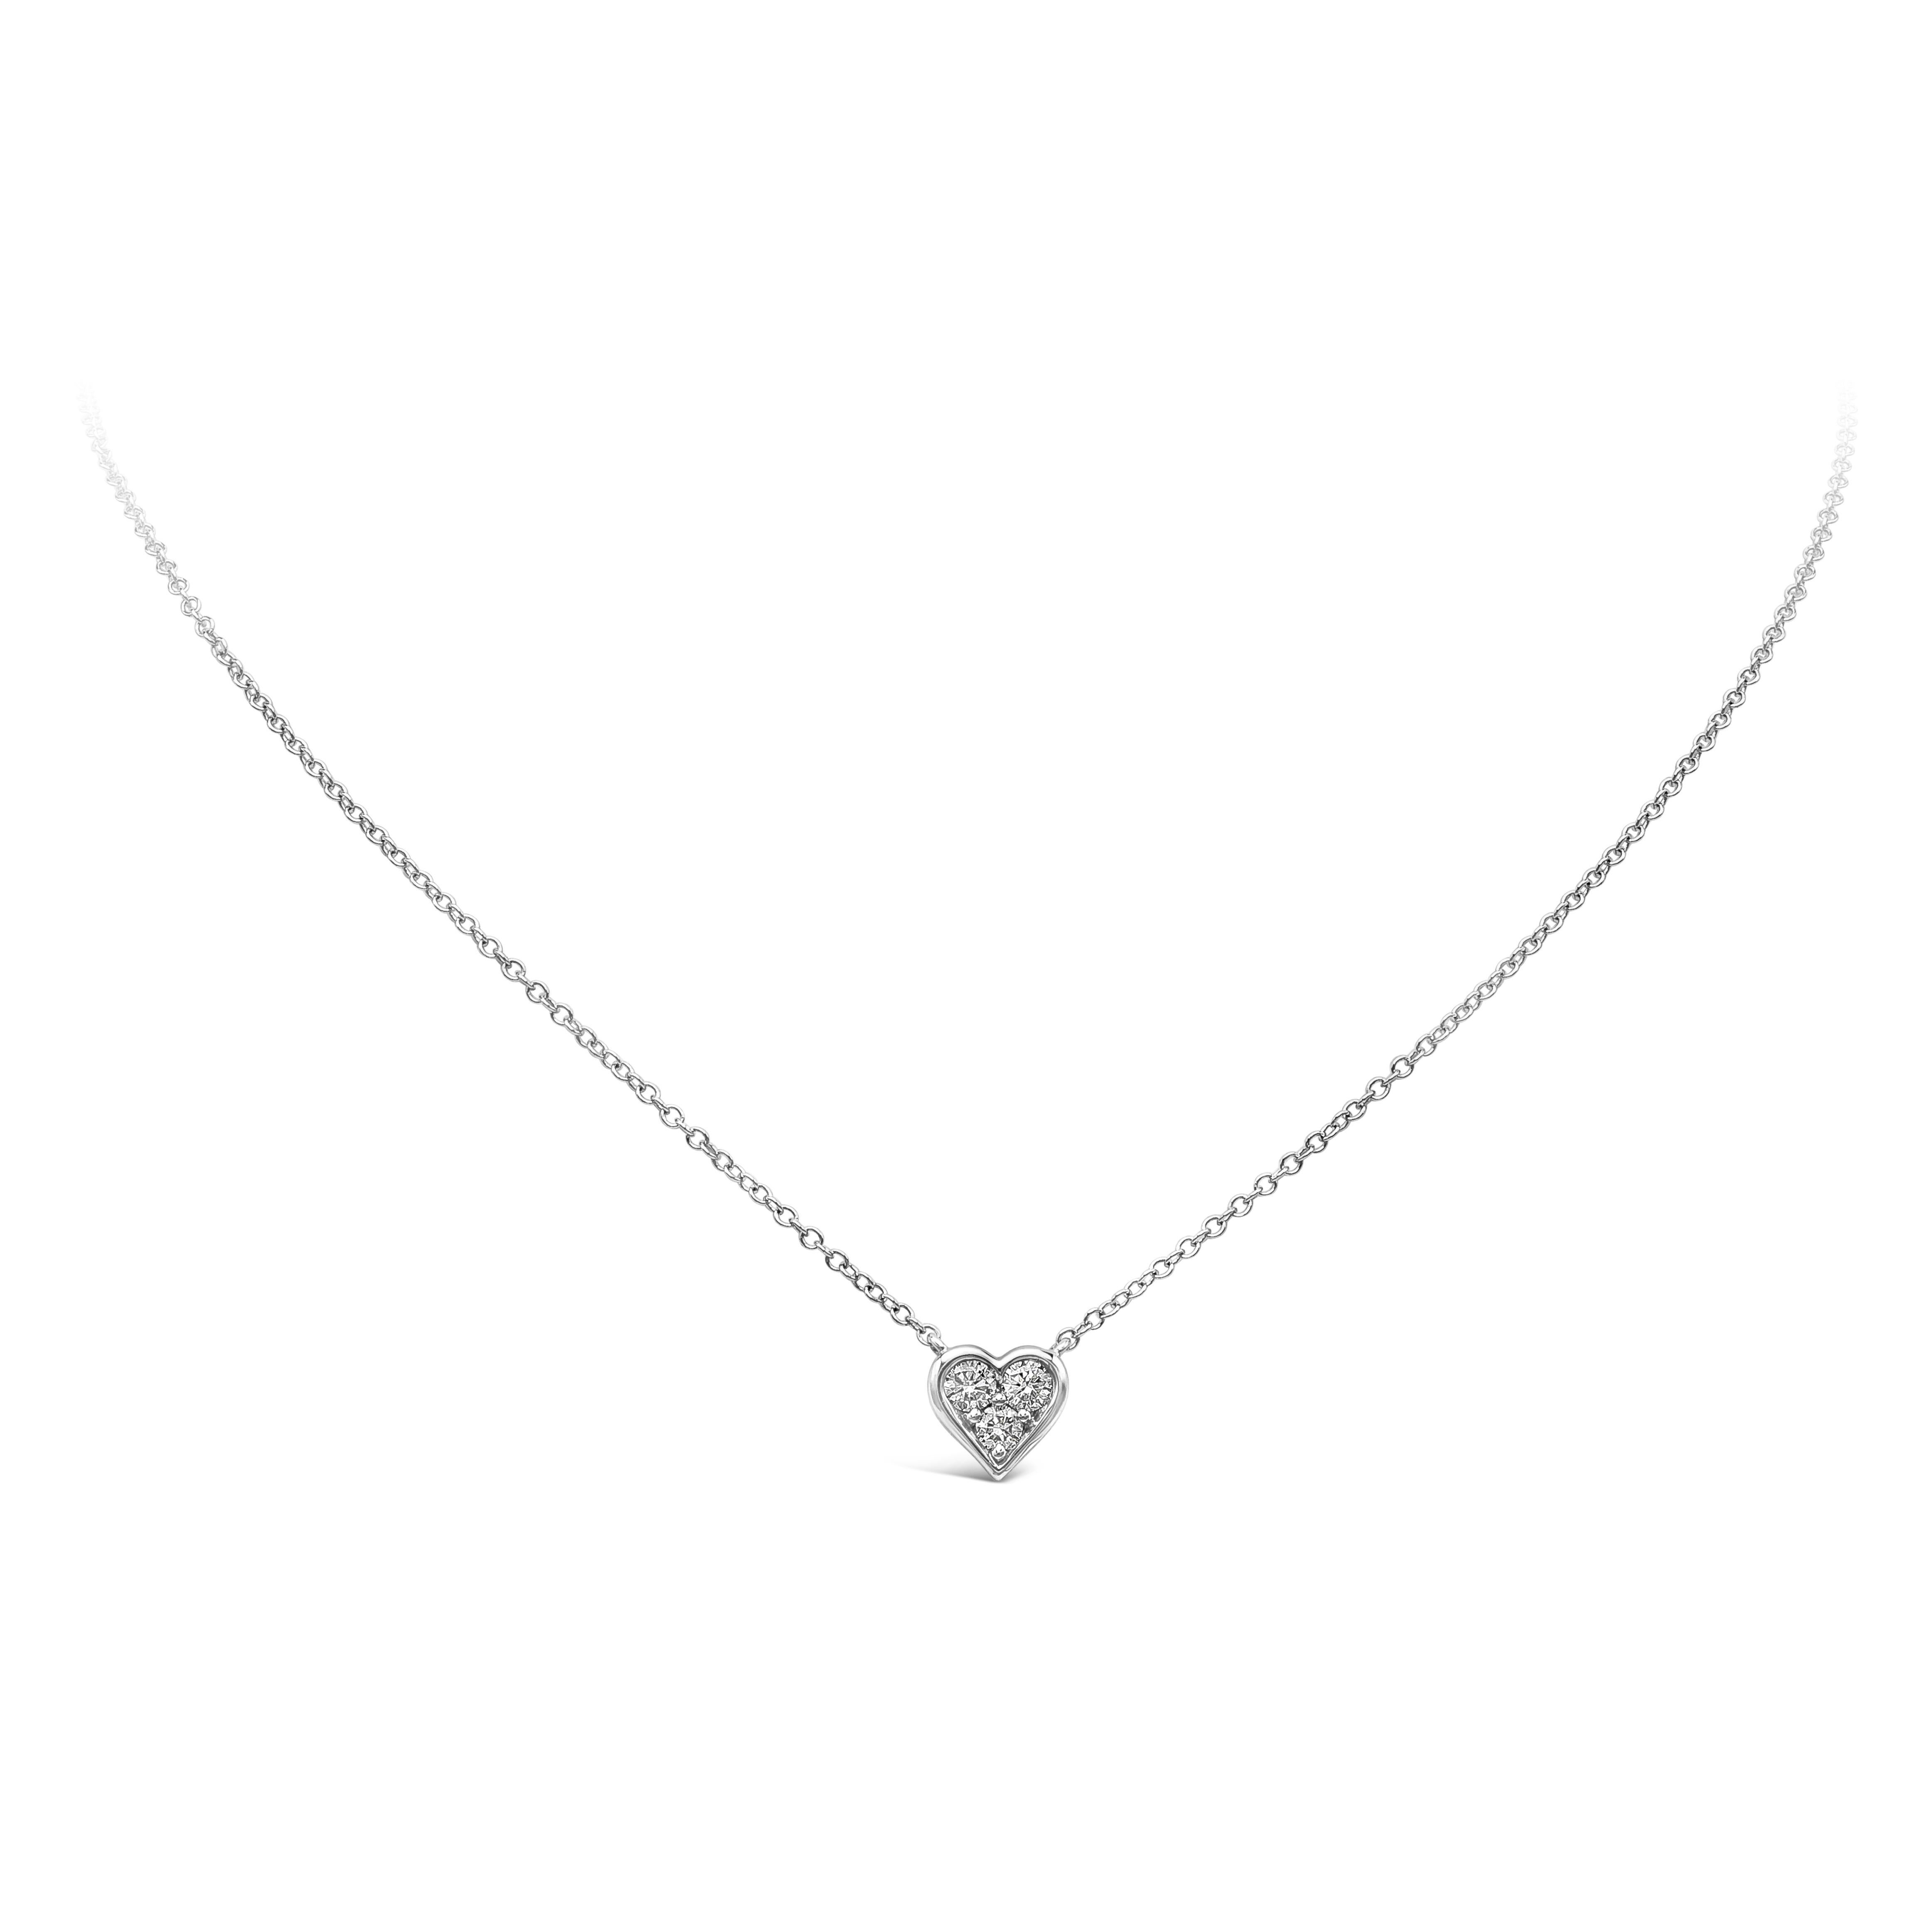 Un collier pendentif simple mettant en valeur 3 diamants ronds de taille brillant pesant 0,28 carats au total, sertis dans un design chic en forme de cœur et suspendus à une chaîne réglable de 18 pouces. Finement réalisé en or blanc 18